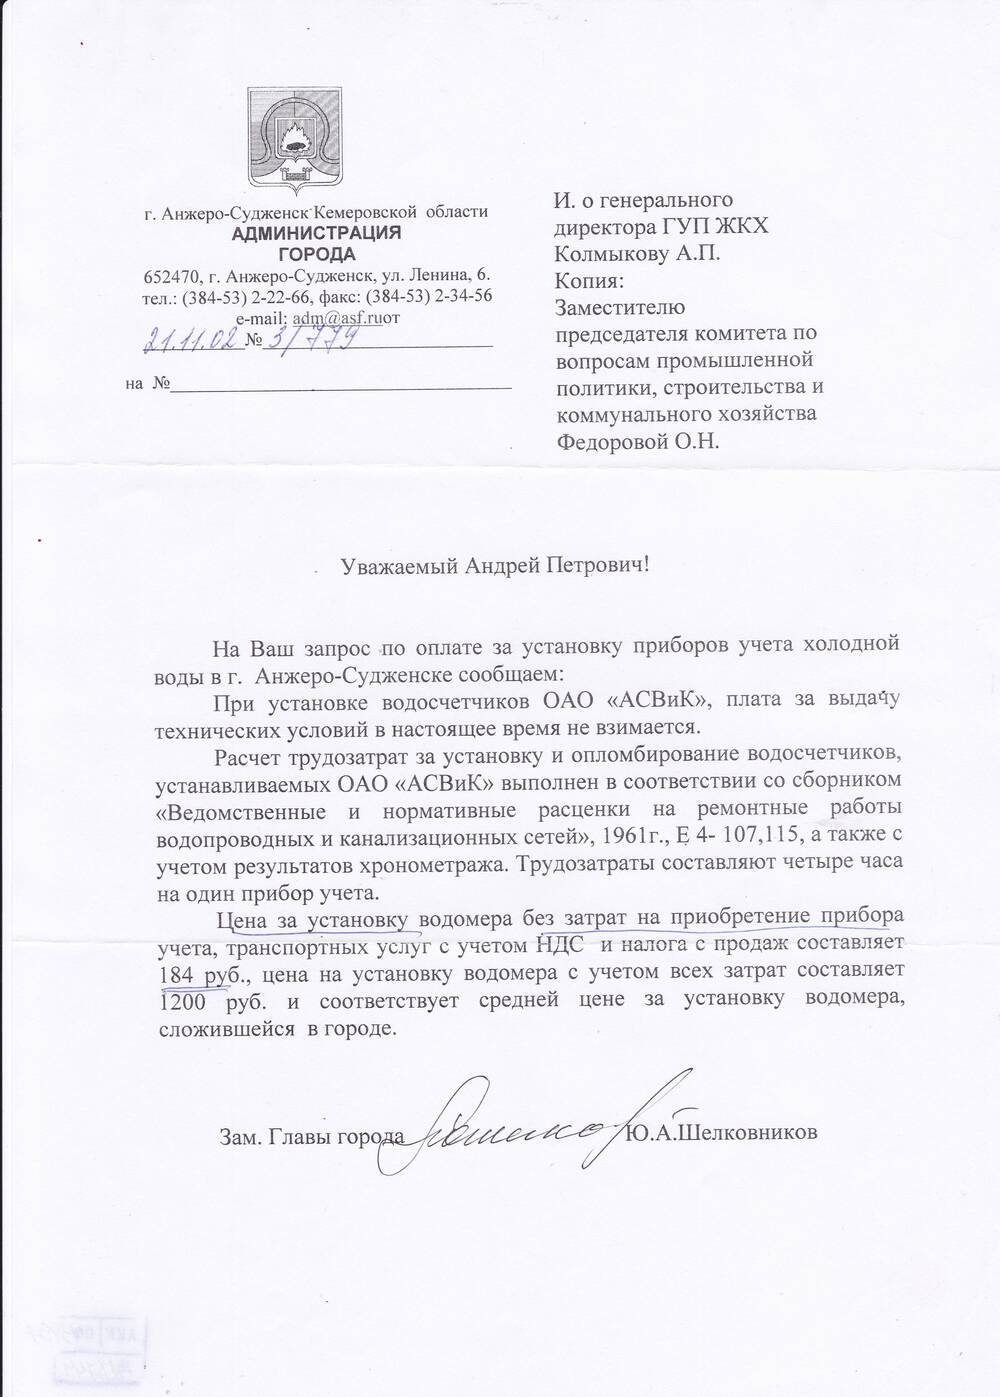 Ответ Замглавы города Шелковникова Ю.А. от 21.11.2002 г.